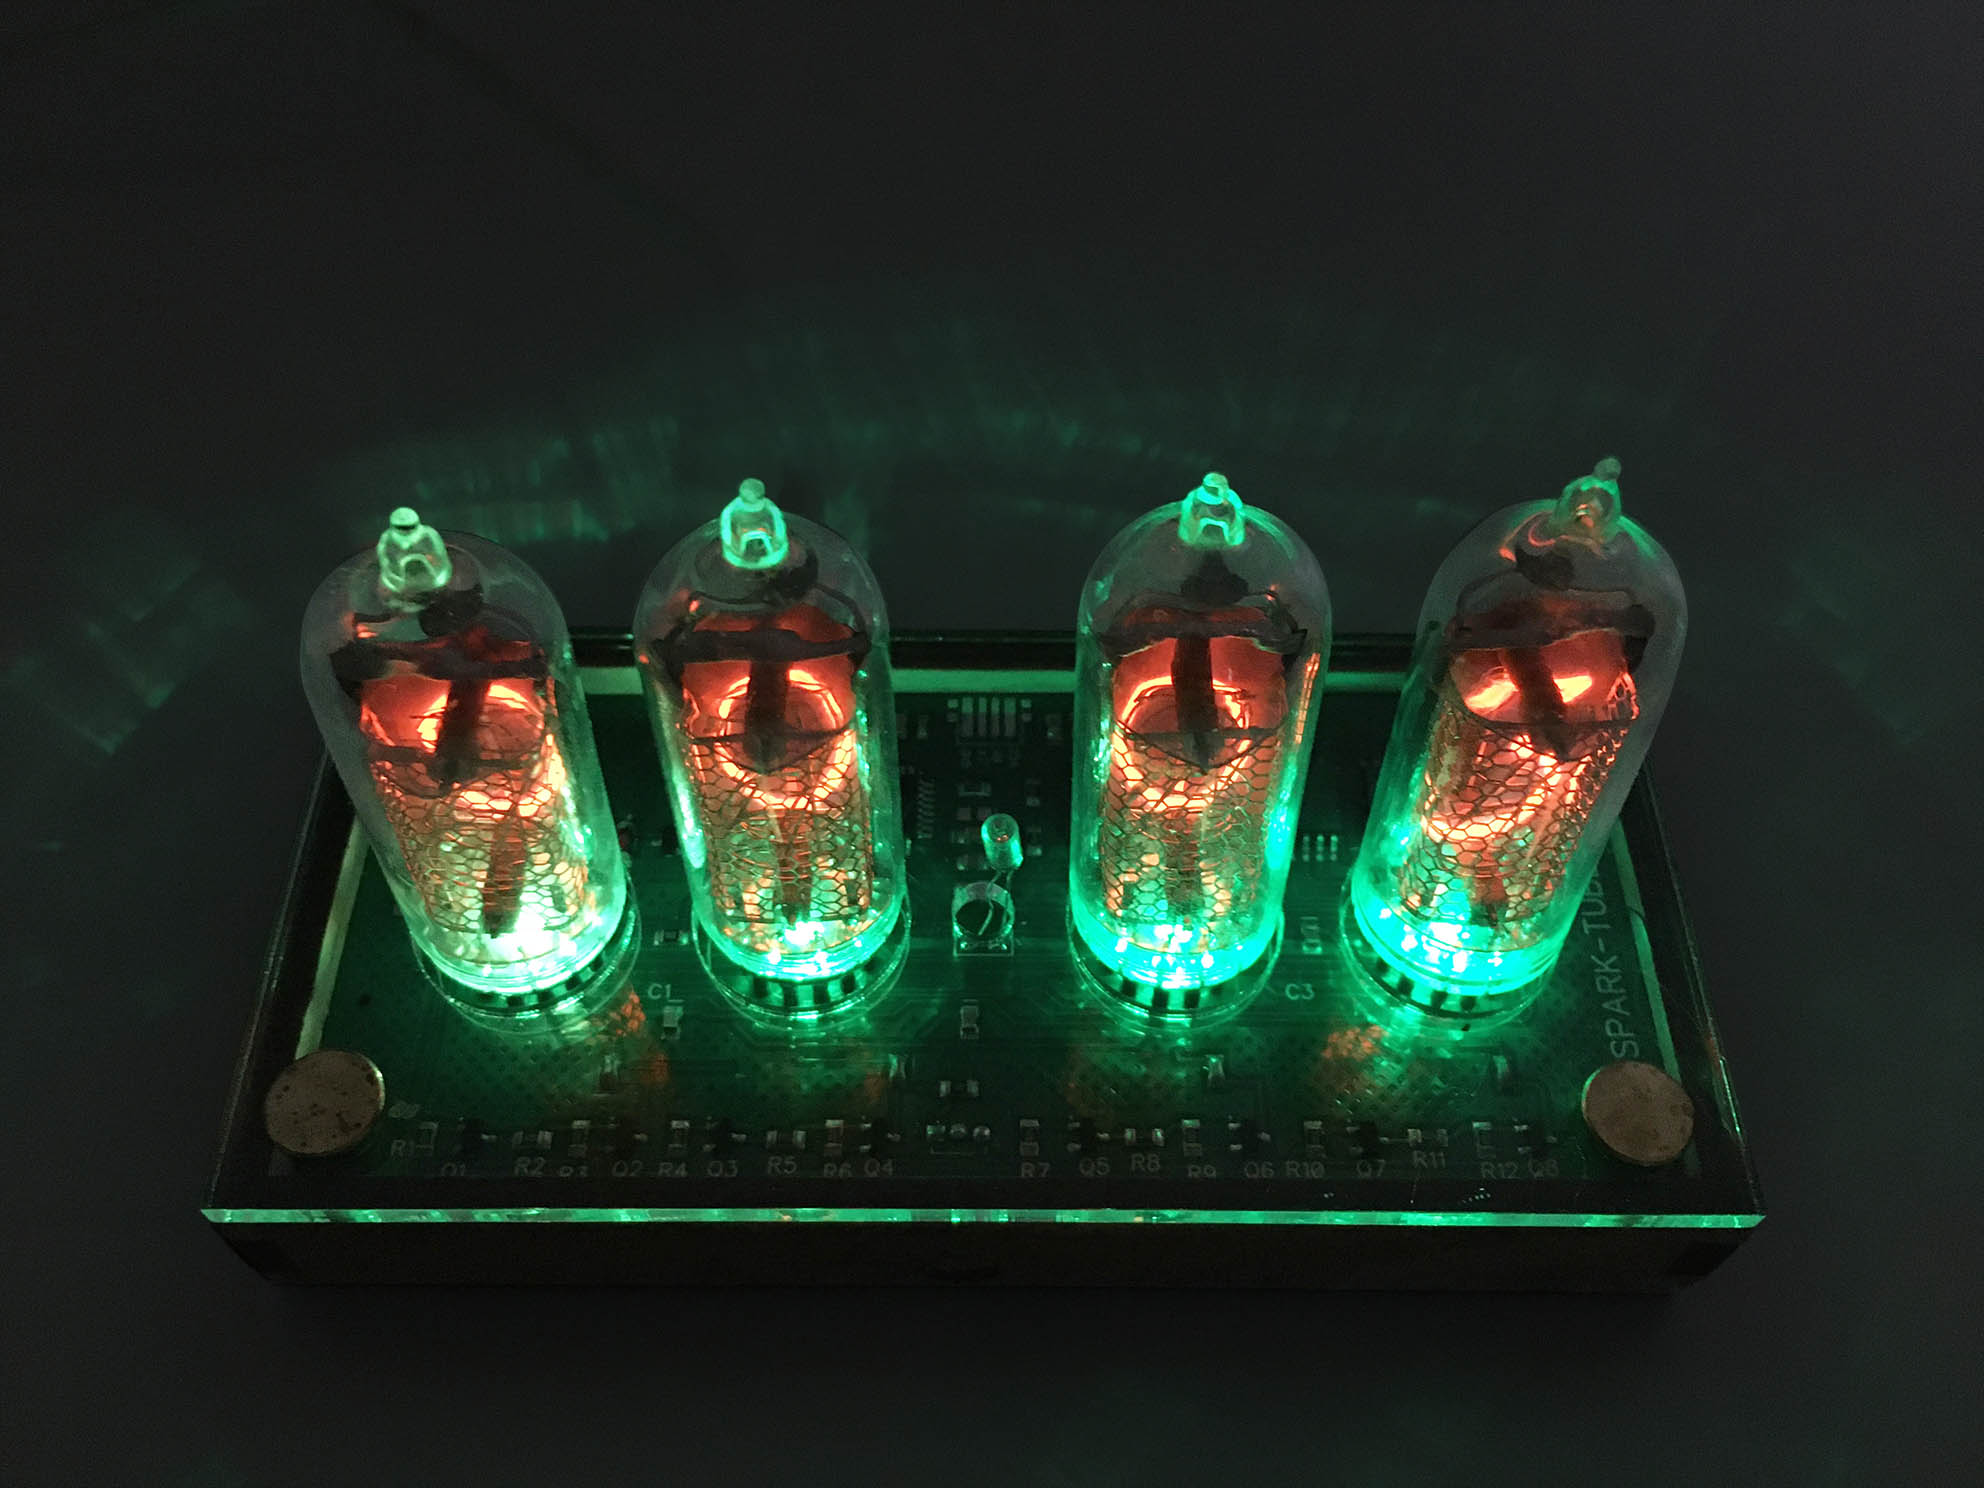 ニキシー管時計 ニキシー管置時計 IN-14 Glow Tube Nixie Electron